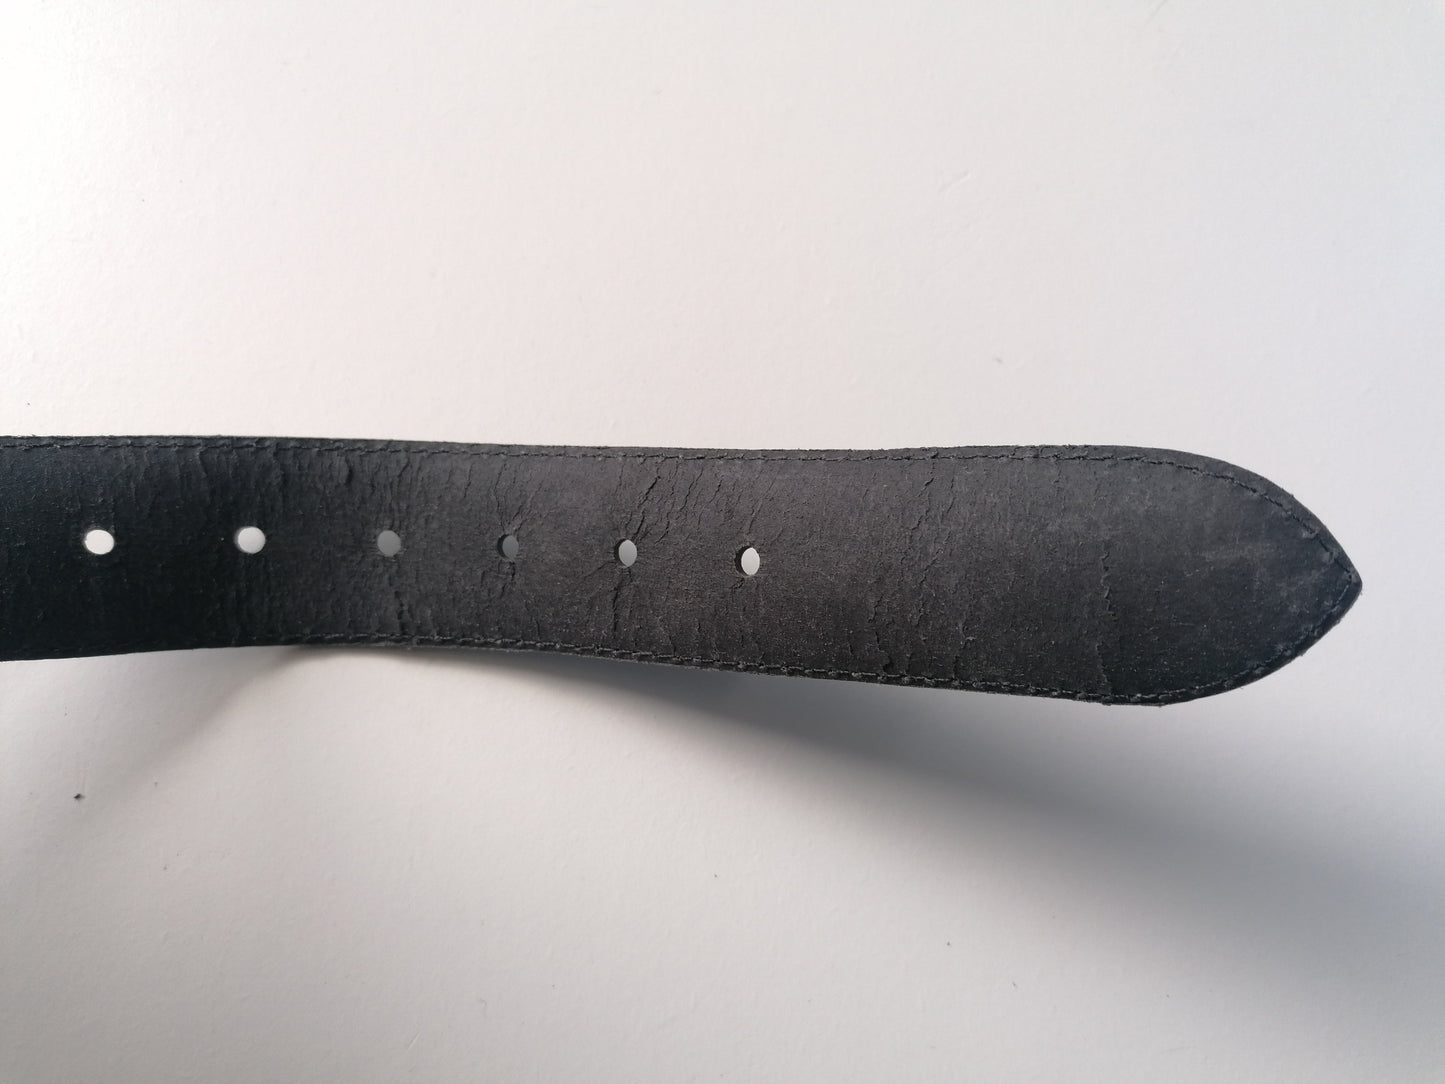 Vintage Leren riem met ijzeren "Plumber" gesp. Zwart gekleurd. 92 cm